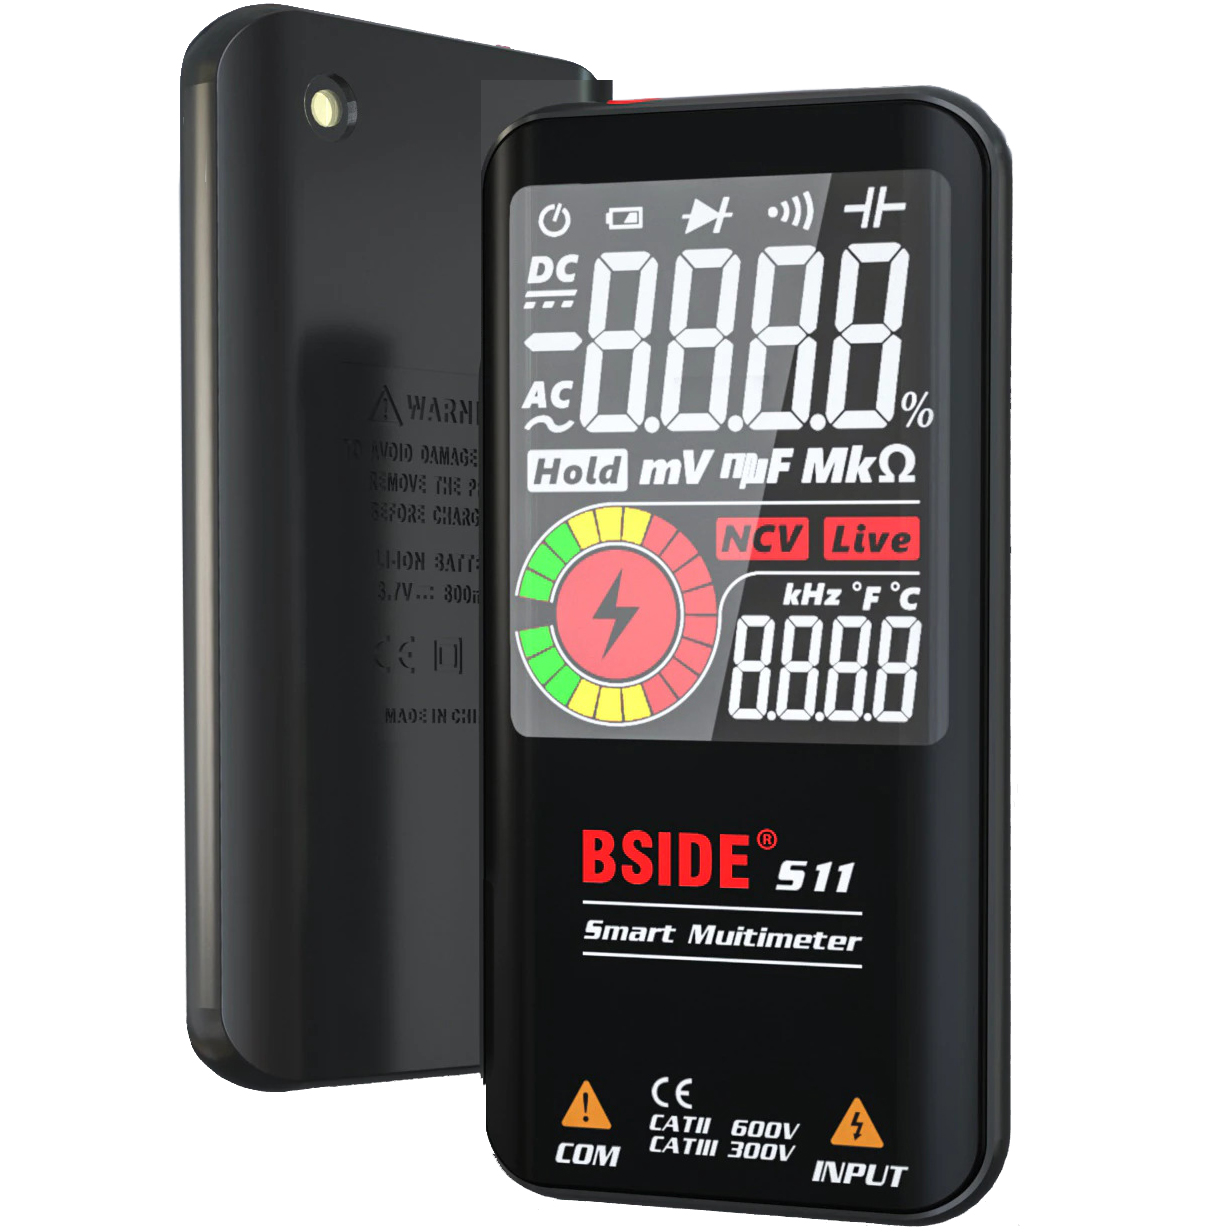 Мультиметр-автомат BSIDE S11 карманный, на аккумуляторе, напряжение ±/~ до 600v, Сопротивление до 60 mOm, ёмкость до 100 mF, частотомер, прзвонка, диоды, бесконтактный датчик напряжения NCV, термометр